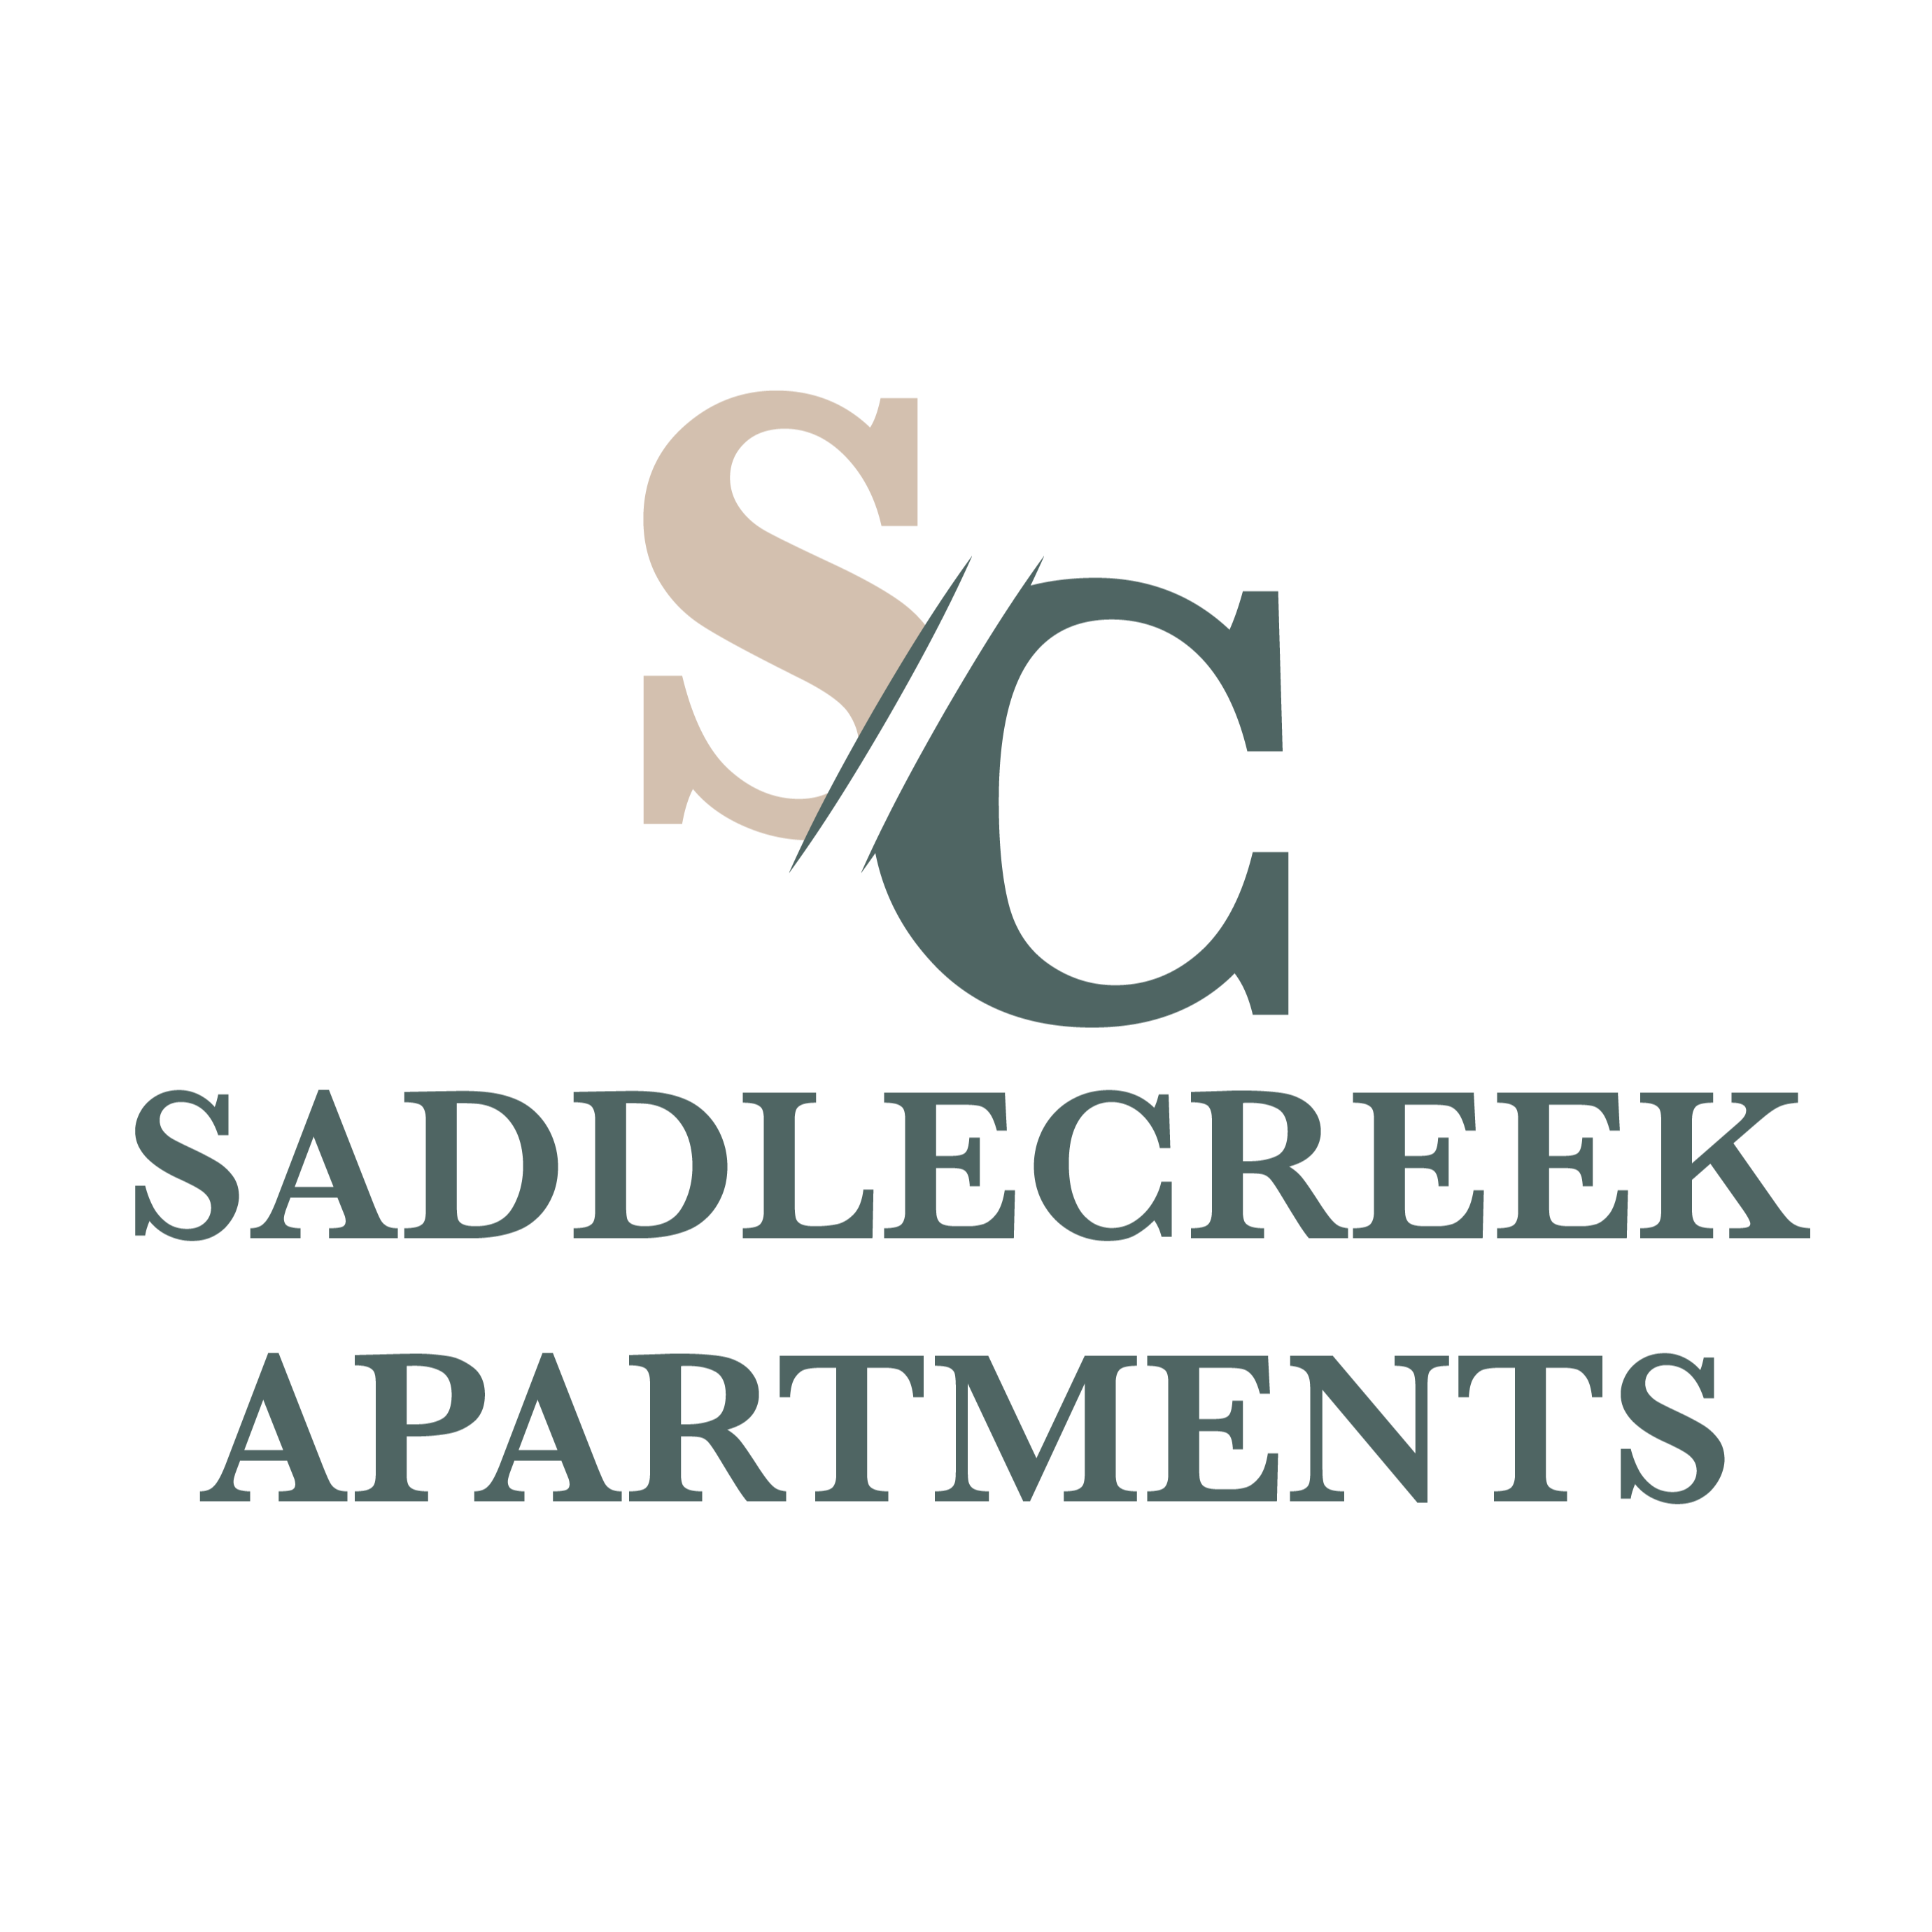 Saddlecreek Apartments